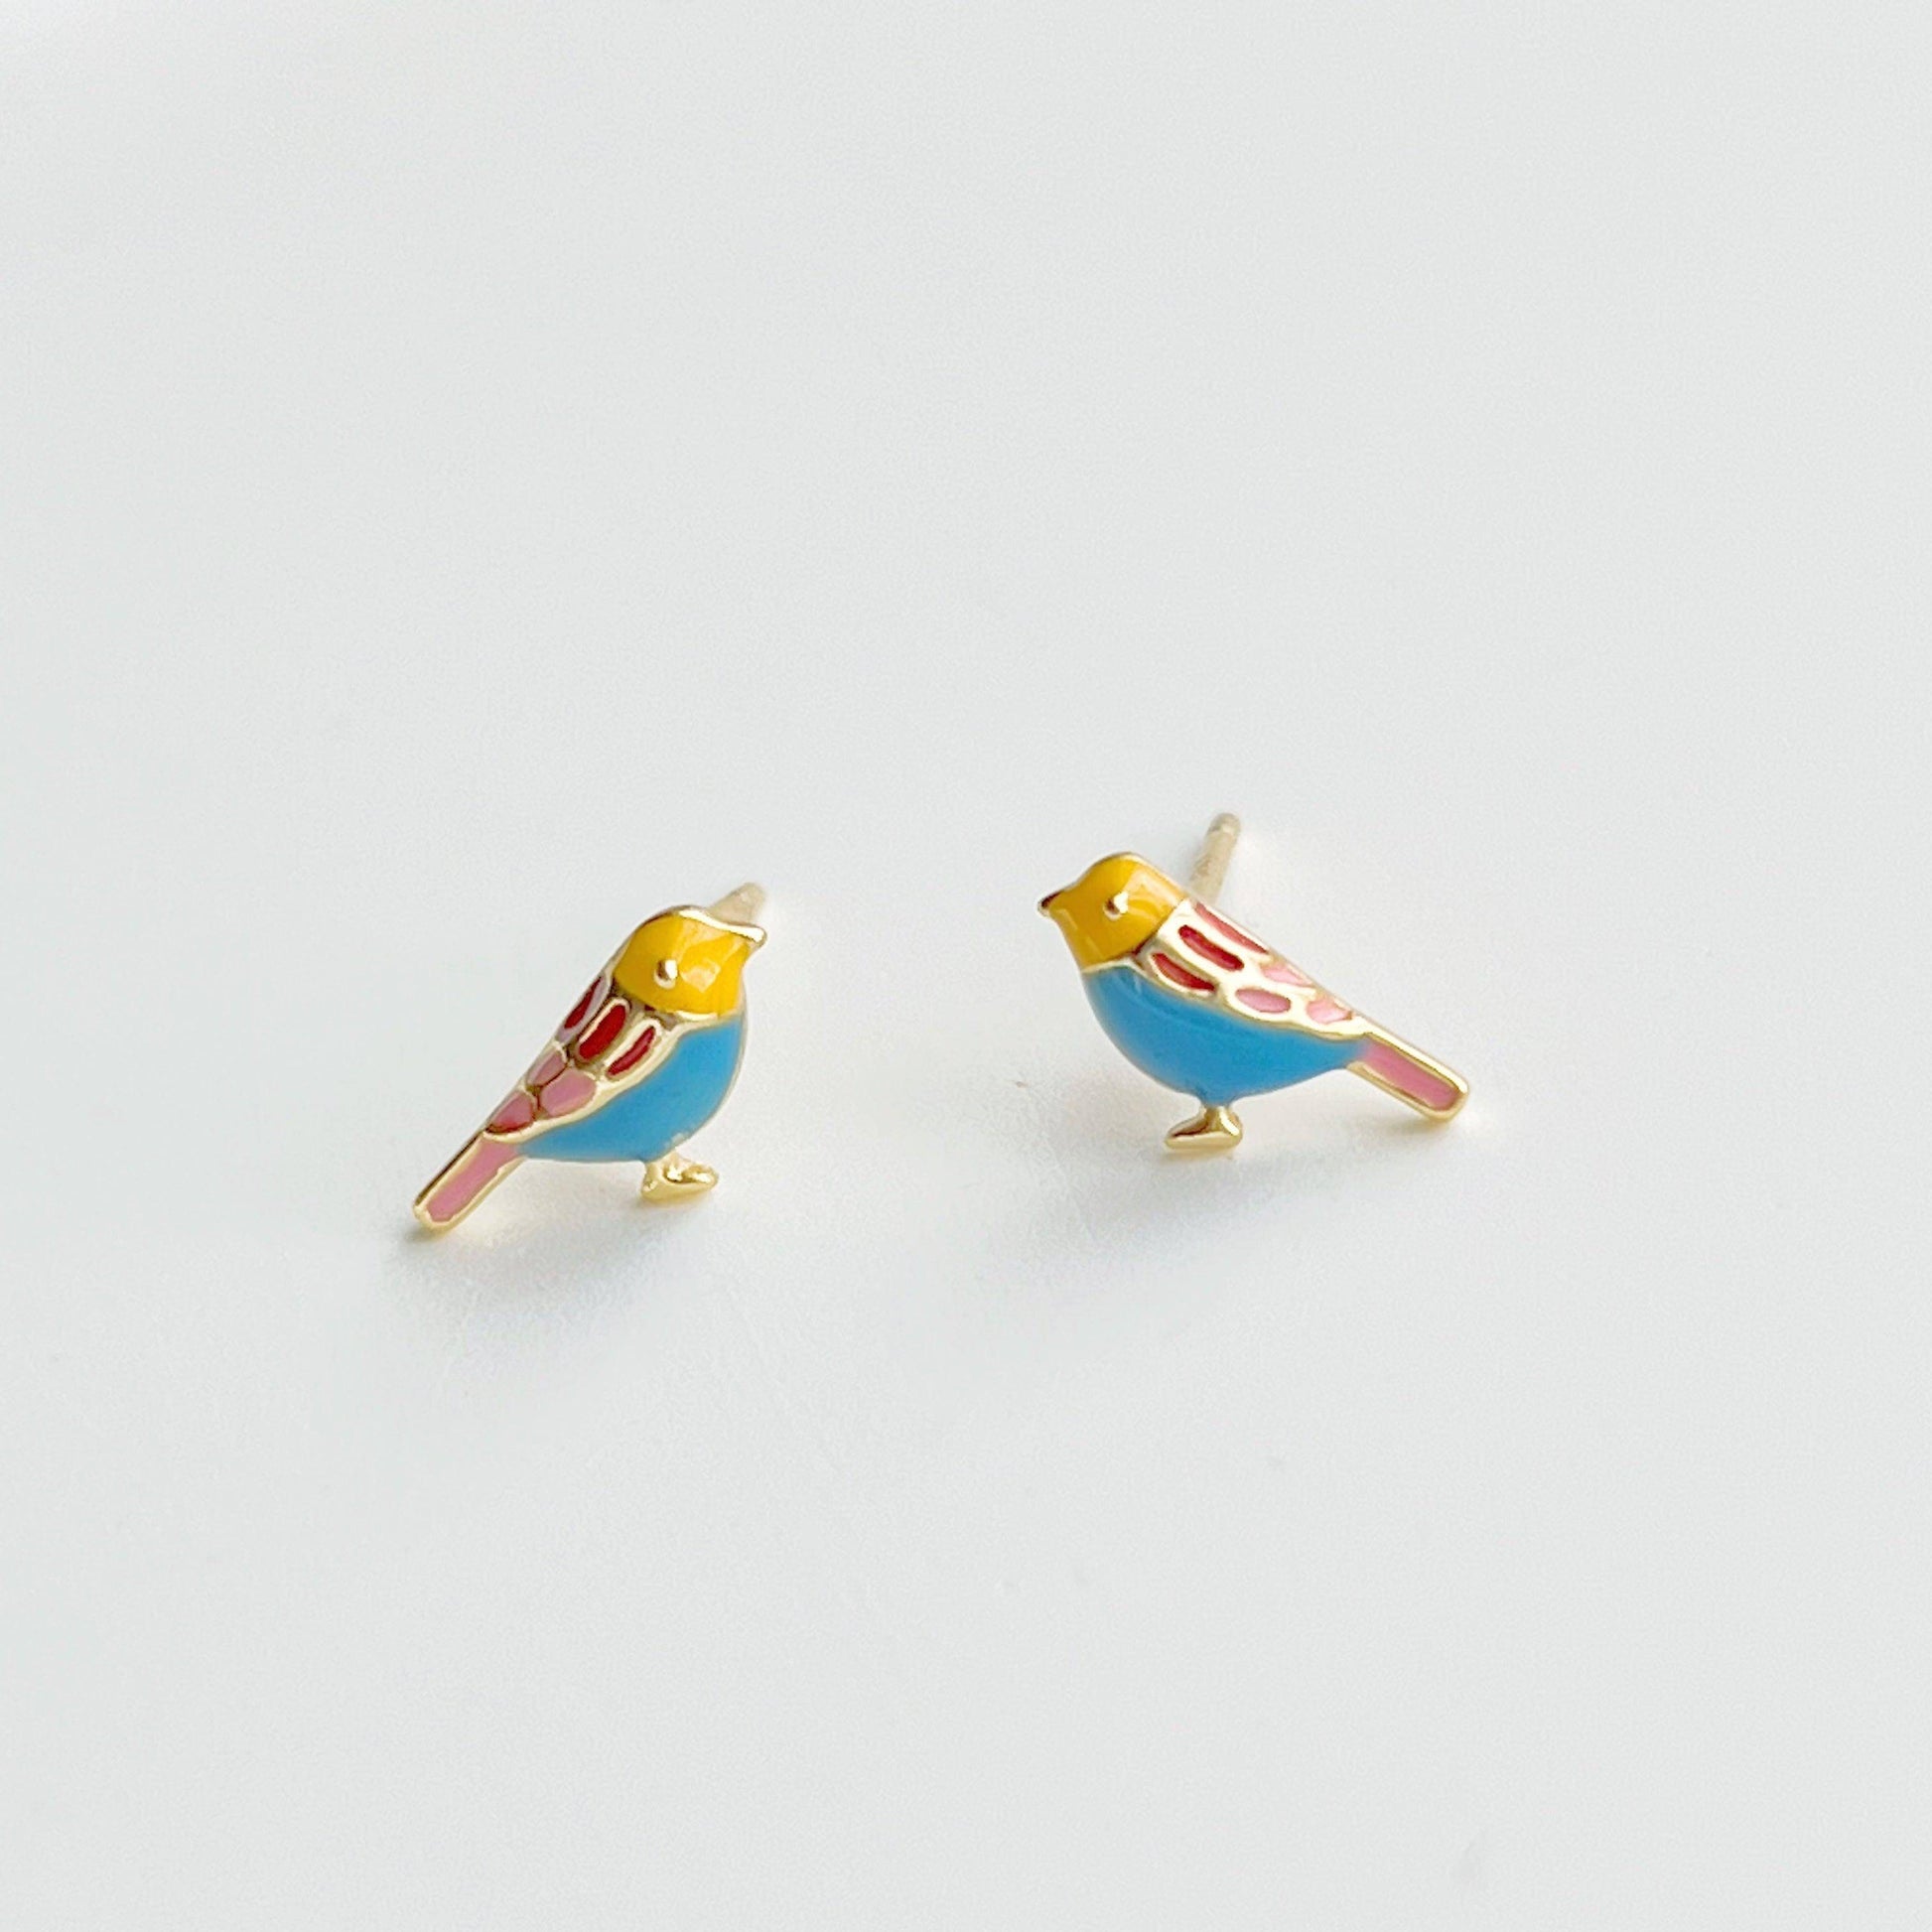 Blue Robin earrings - Tiny Lucky Bird Shape Sterling Silver Stud Earrings-Ninaouity